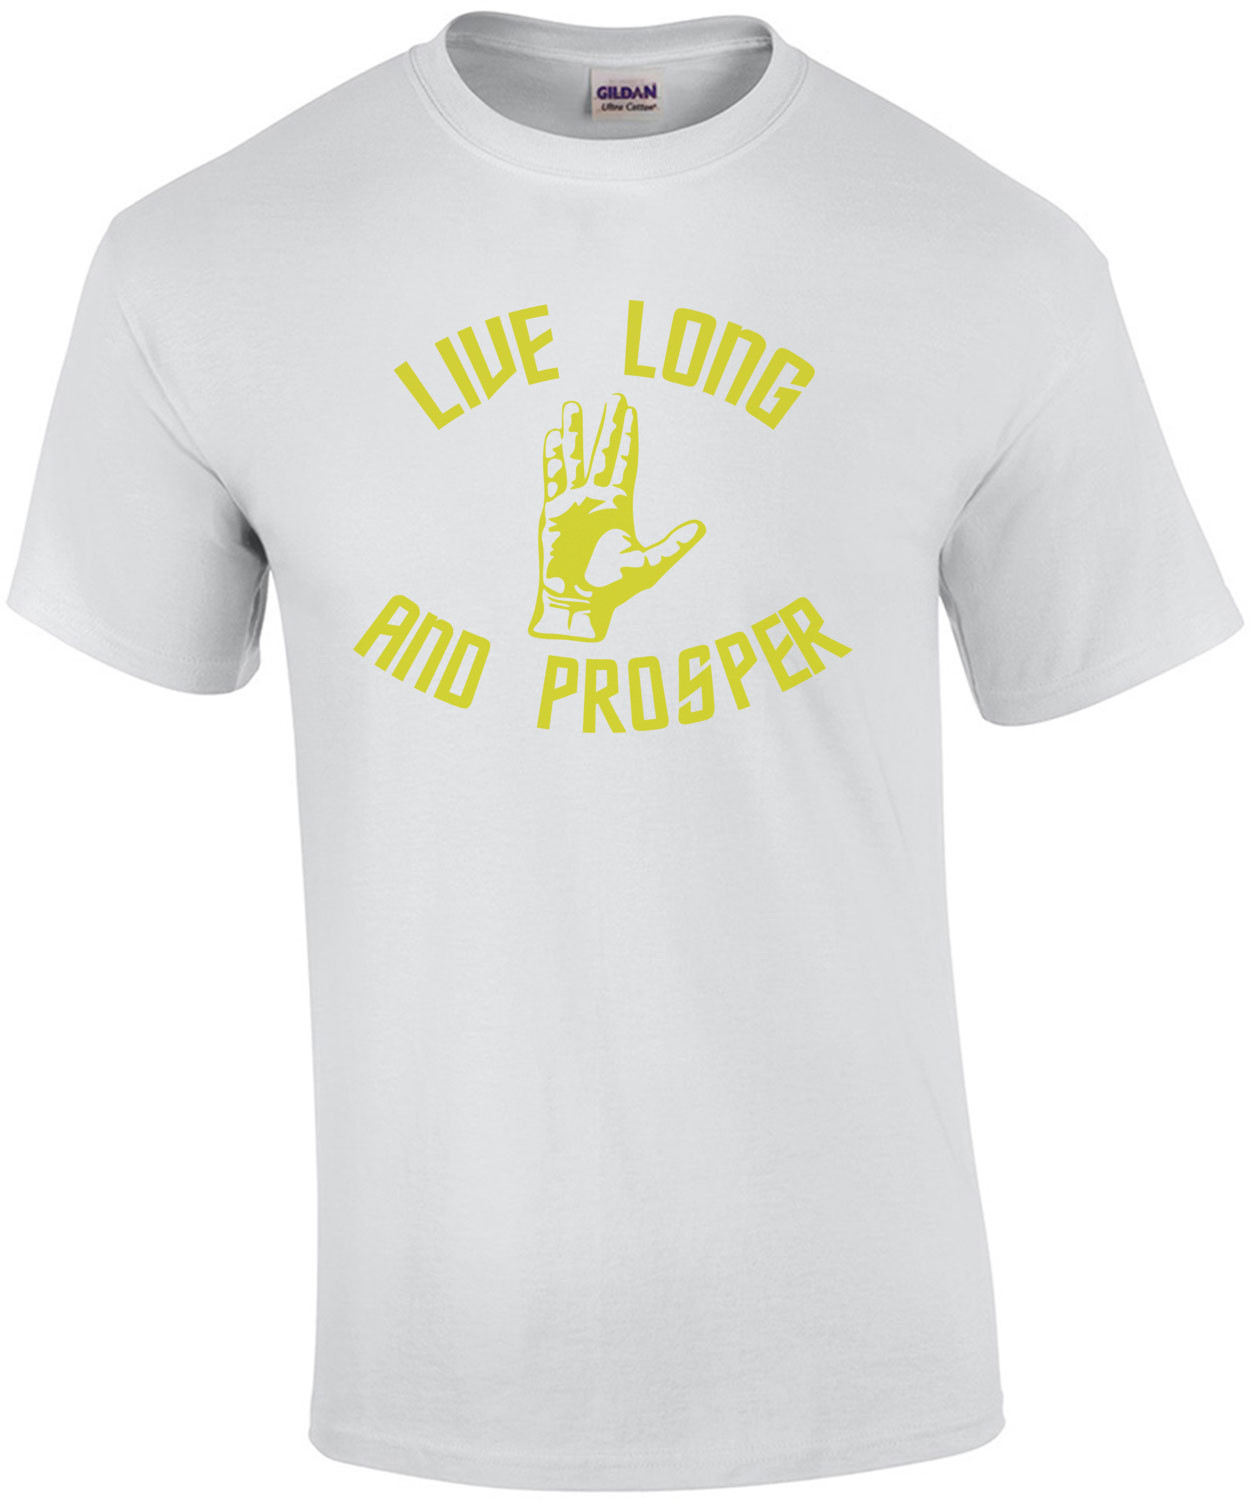 Live Long and Prosper - Star Trek T-Shirt